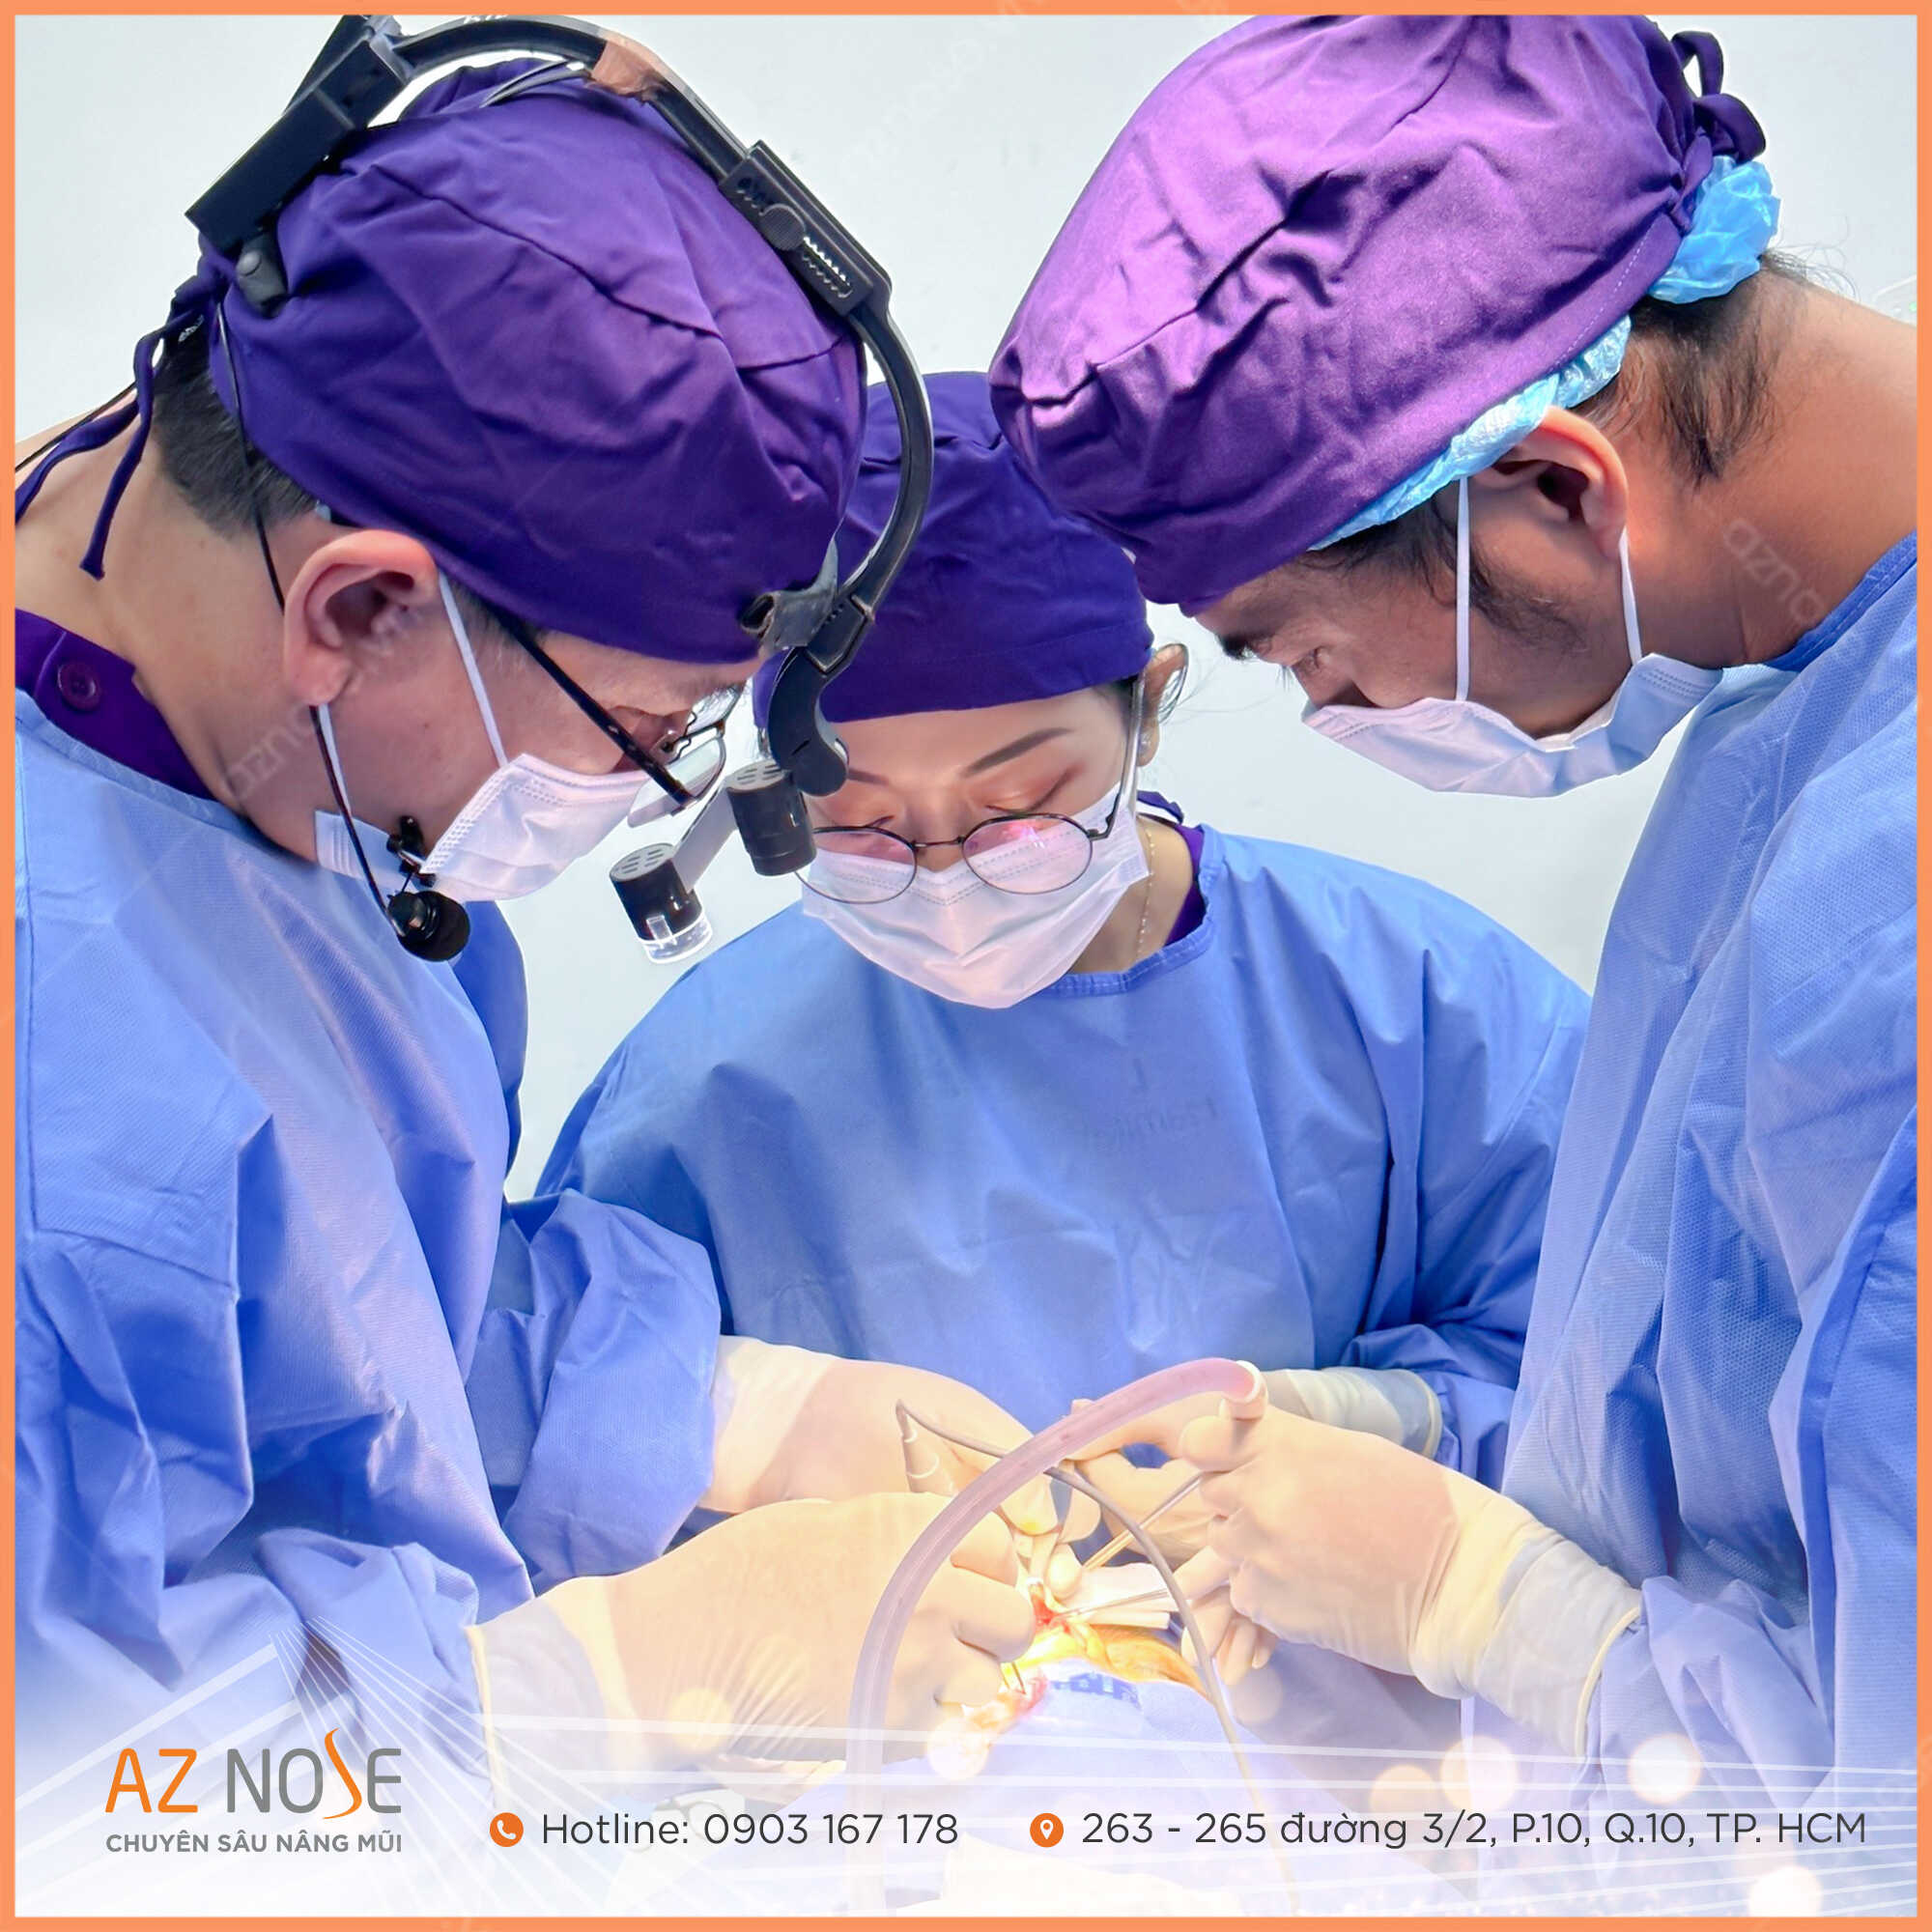 Bác sĩ CKI. Nguyễn Hoàng Nam và Bác sĩ CKI. Đinh Xuân Sơn Tùng trực tiếp thực hiện ca phẫu thuật nâng mũi